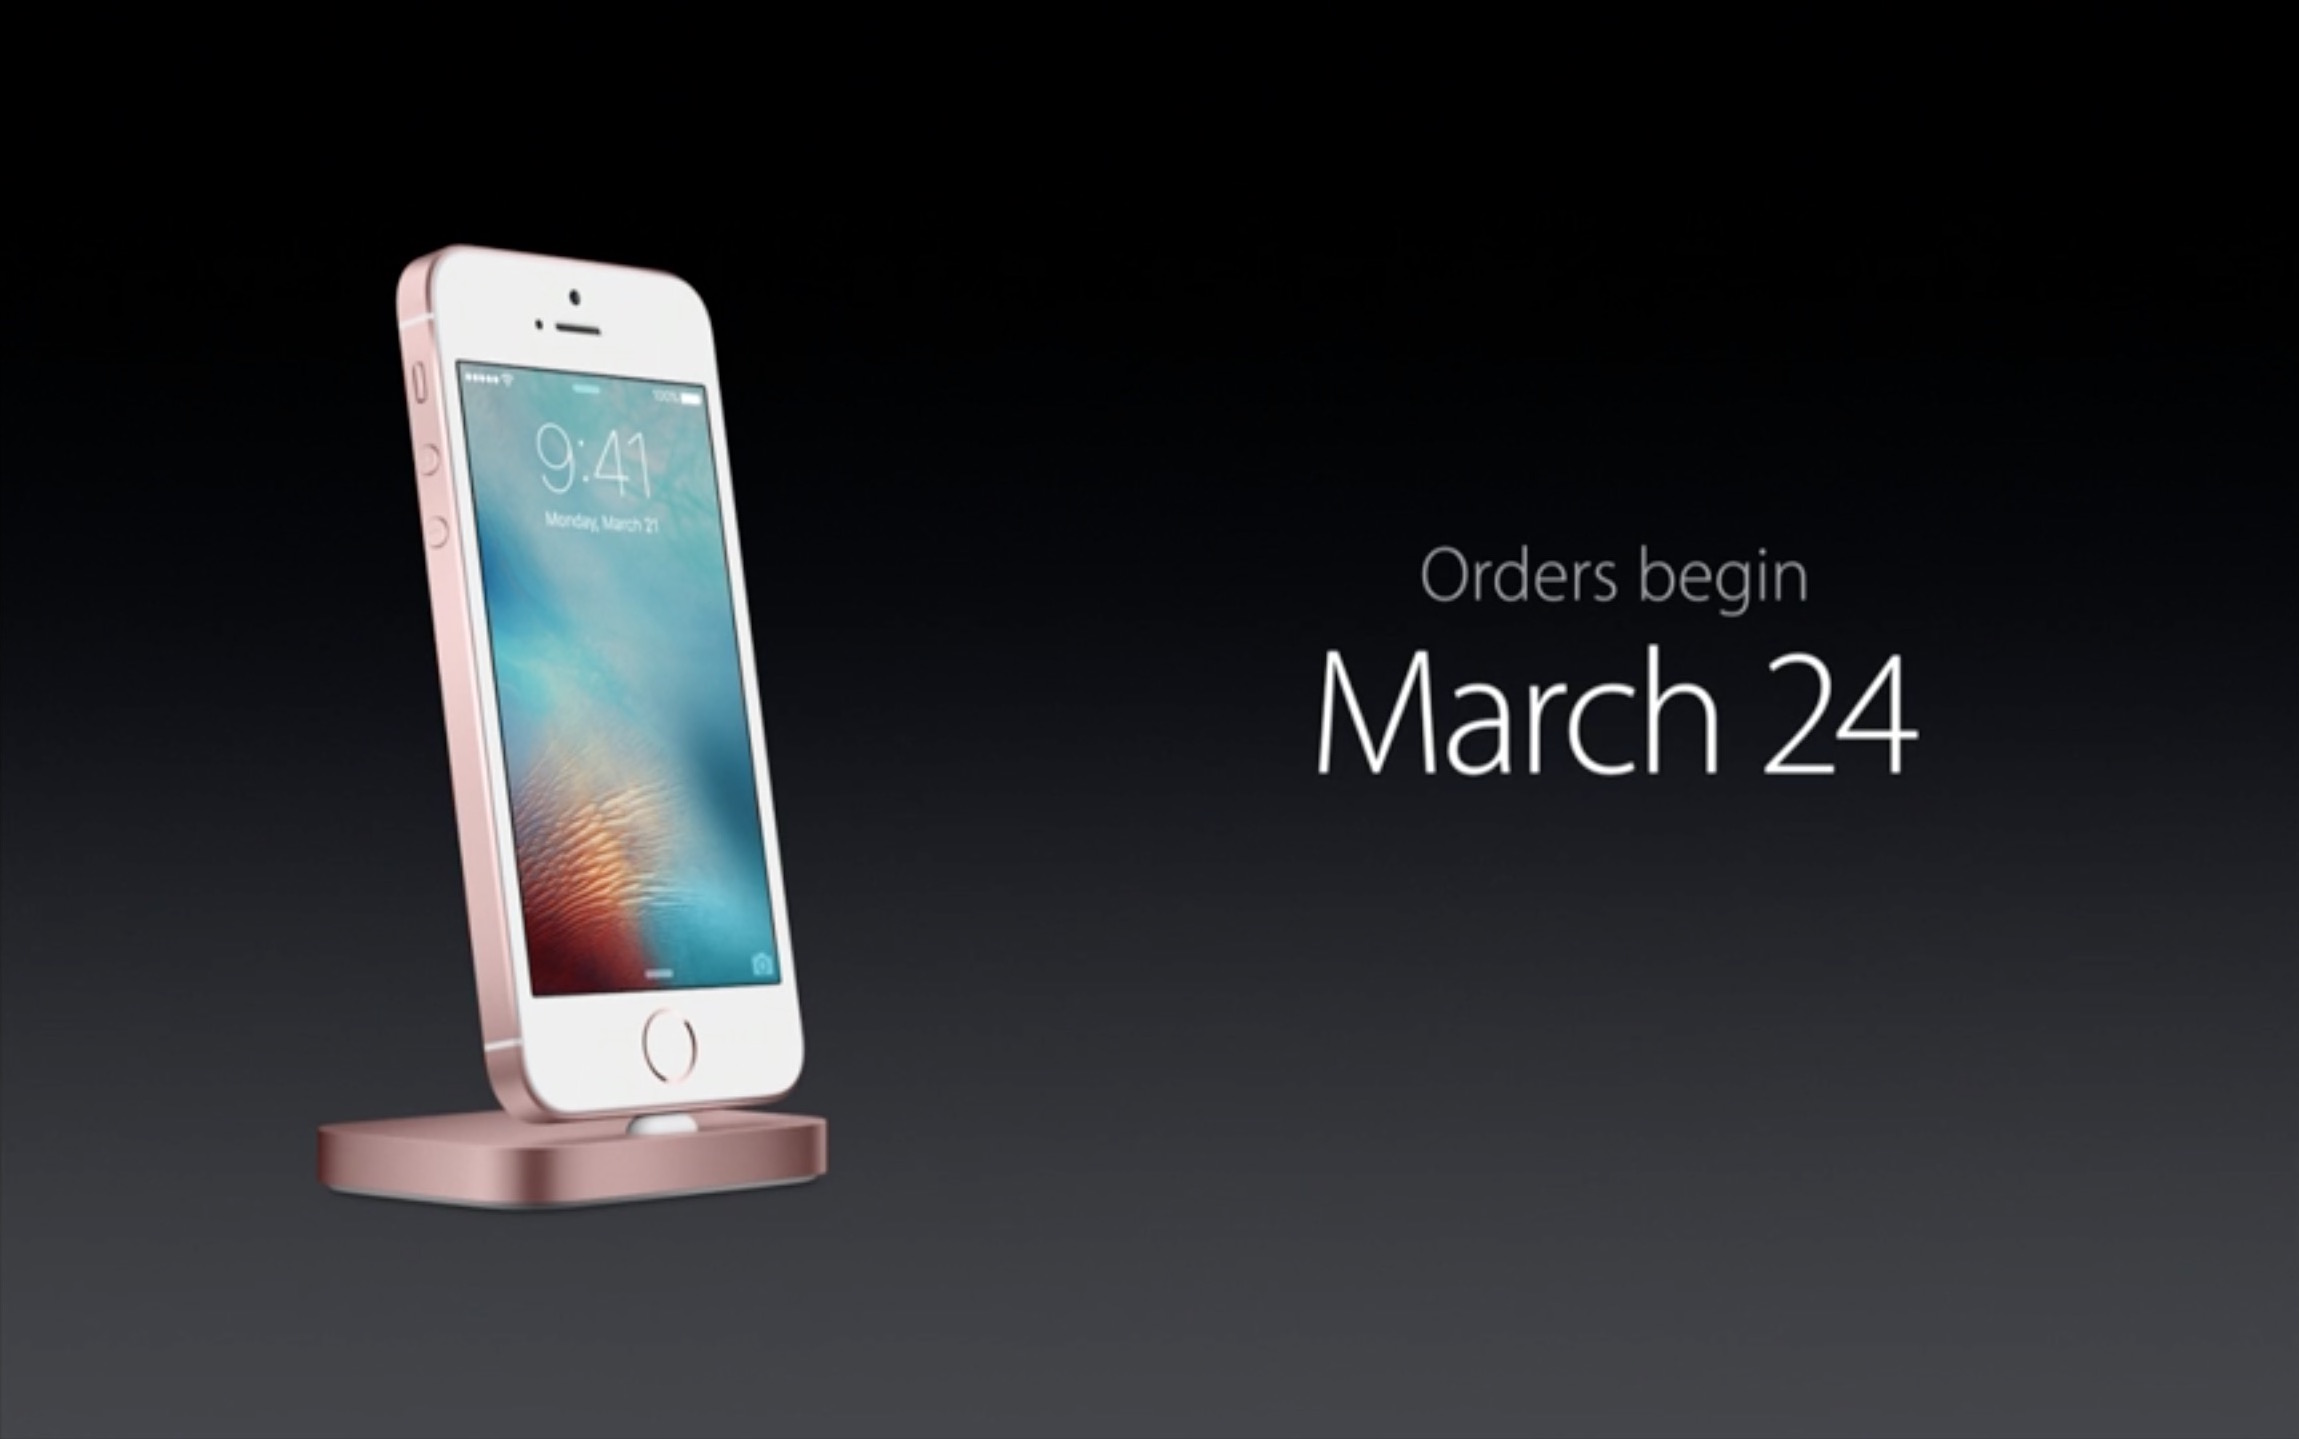 iPhone SEは3月31日発売。史上最強の4インチモデルが登場